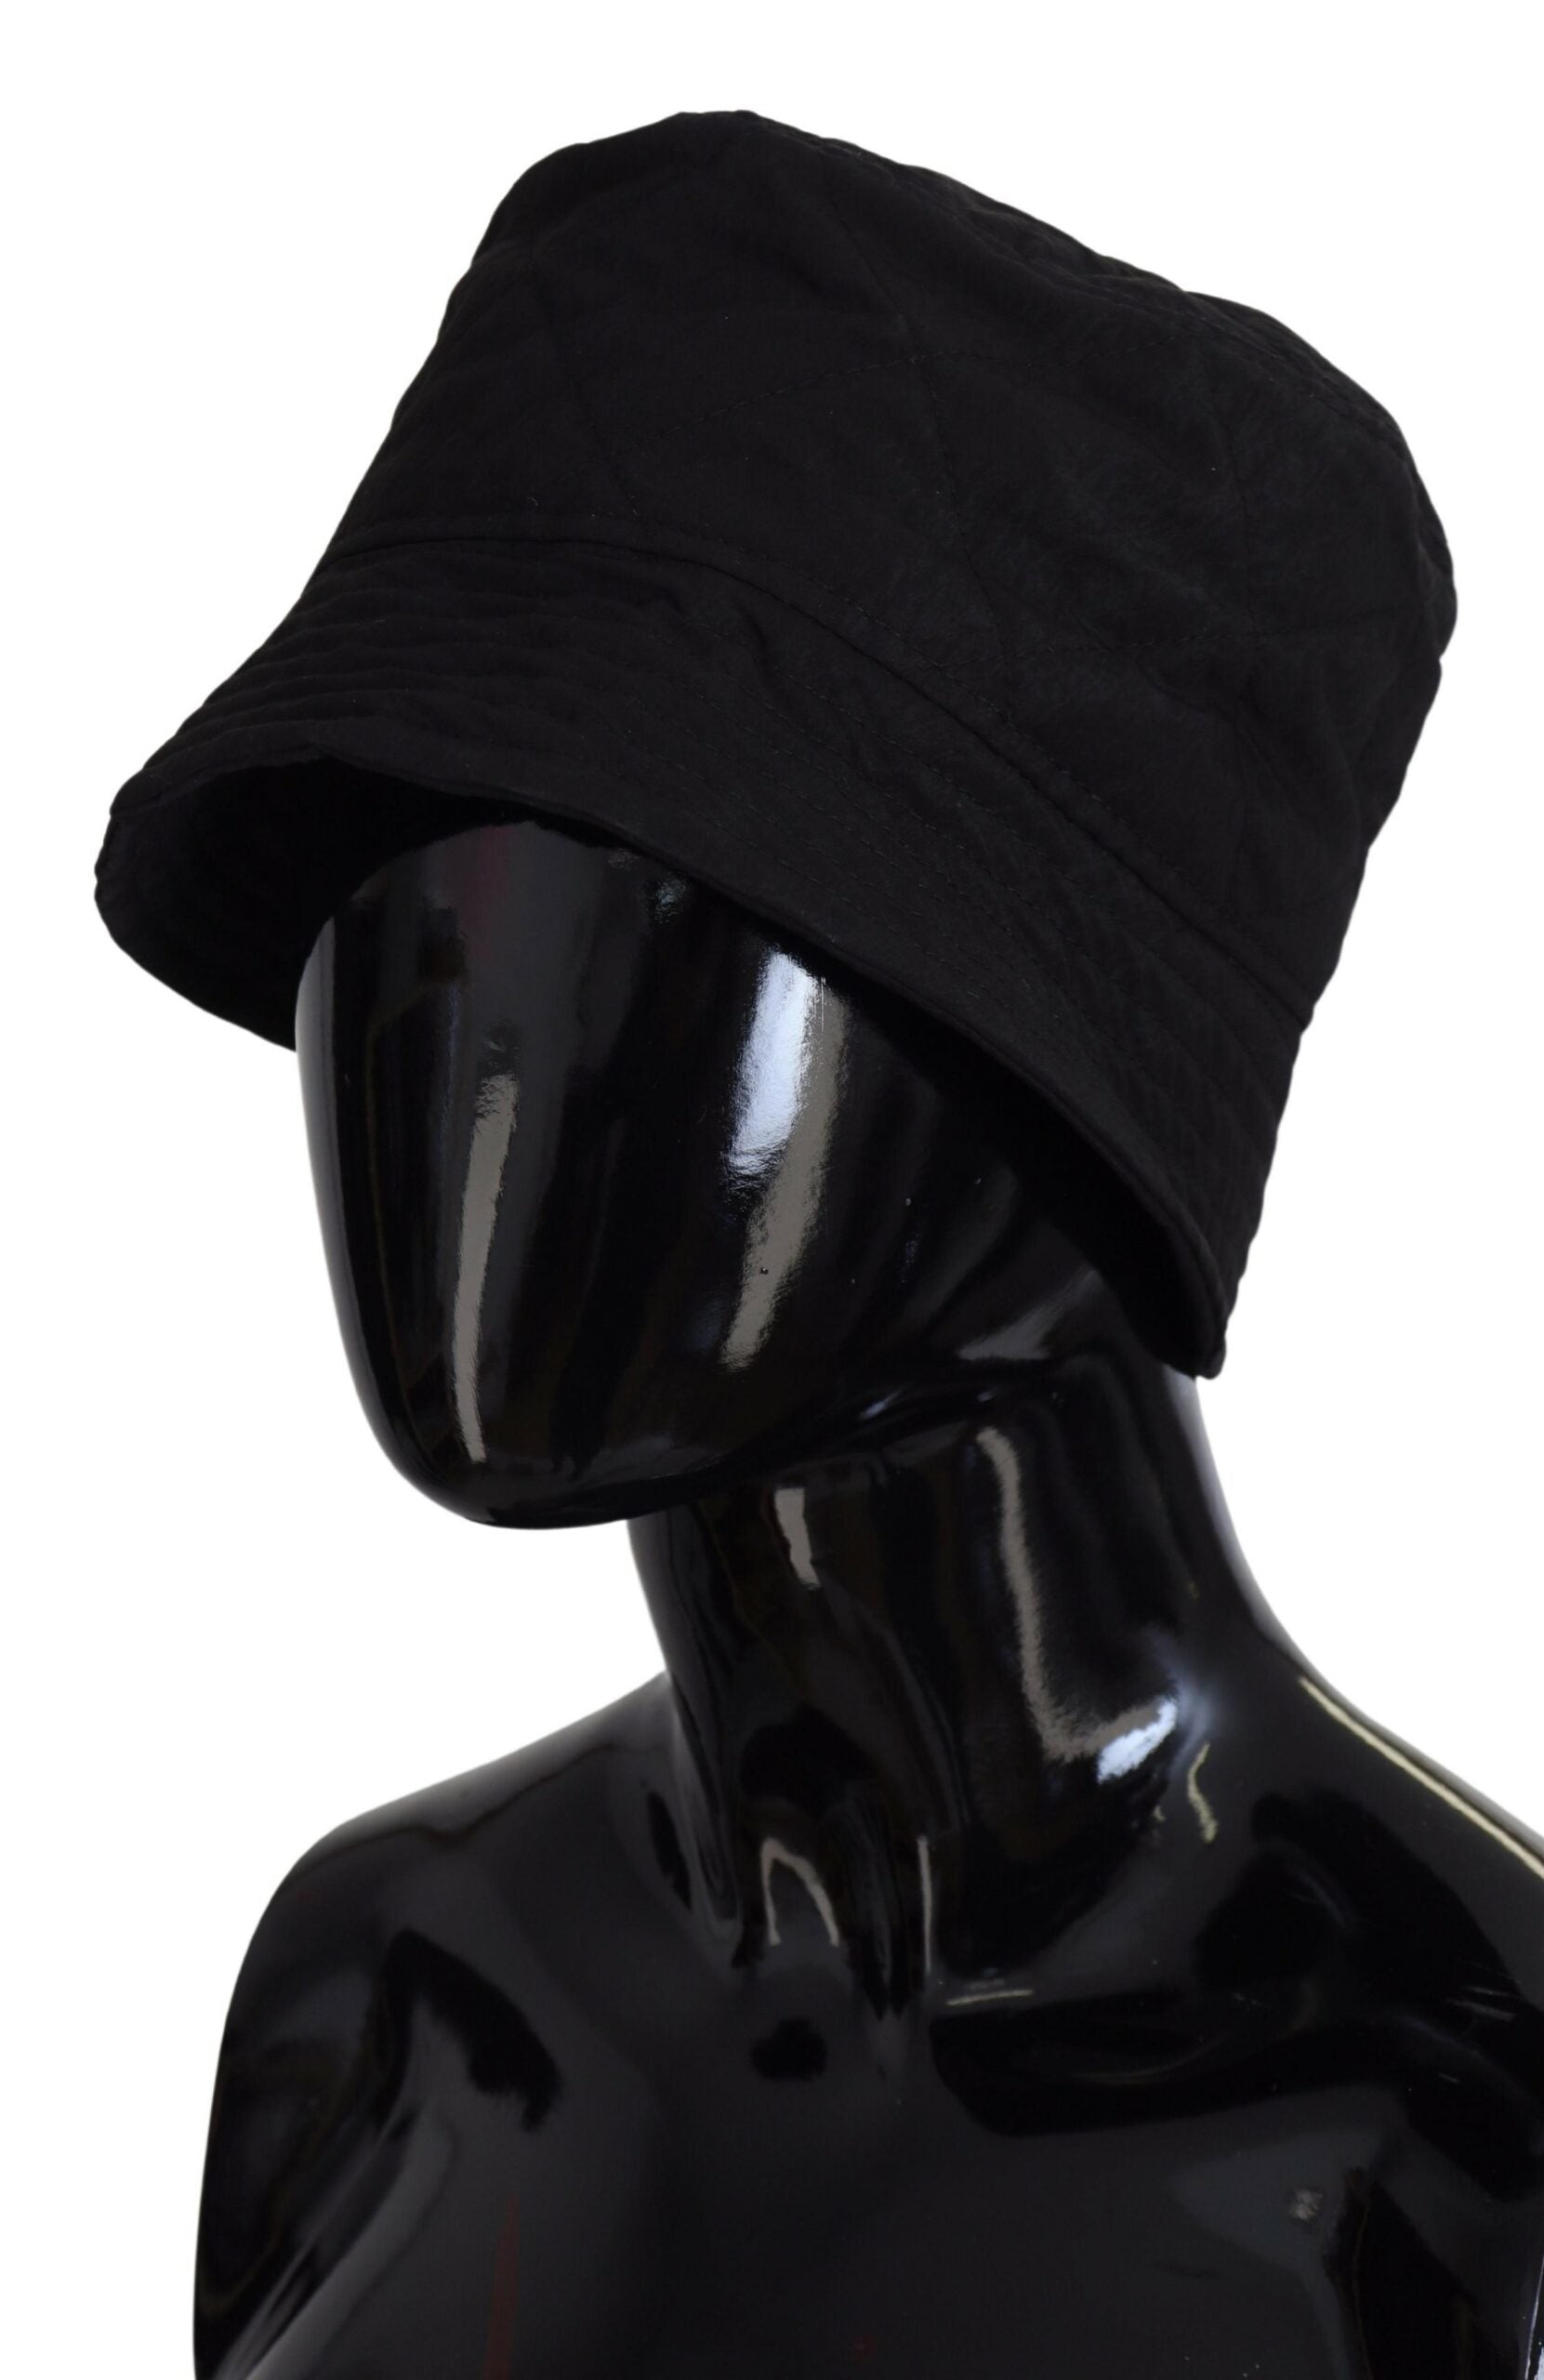 Dolce &amp; Gabbana черна найлонова дамска шапка тип кофа